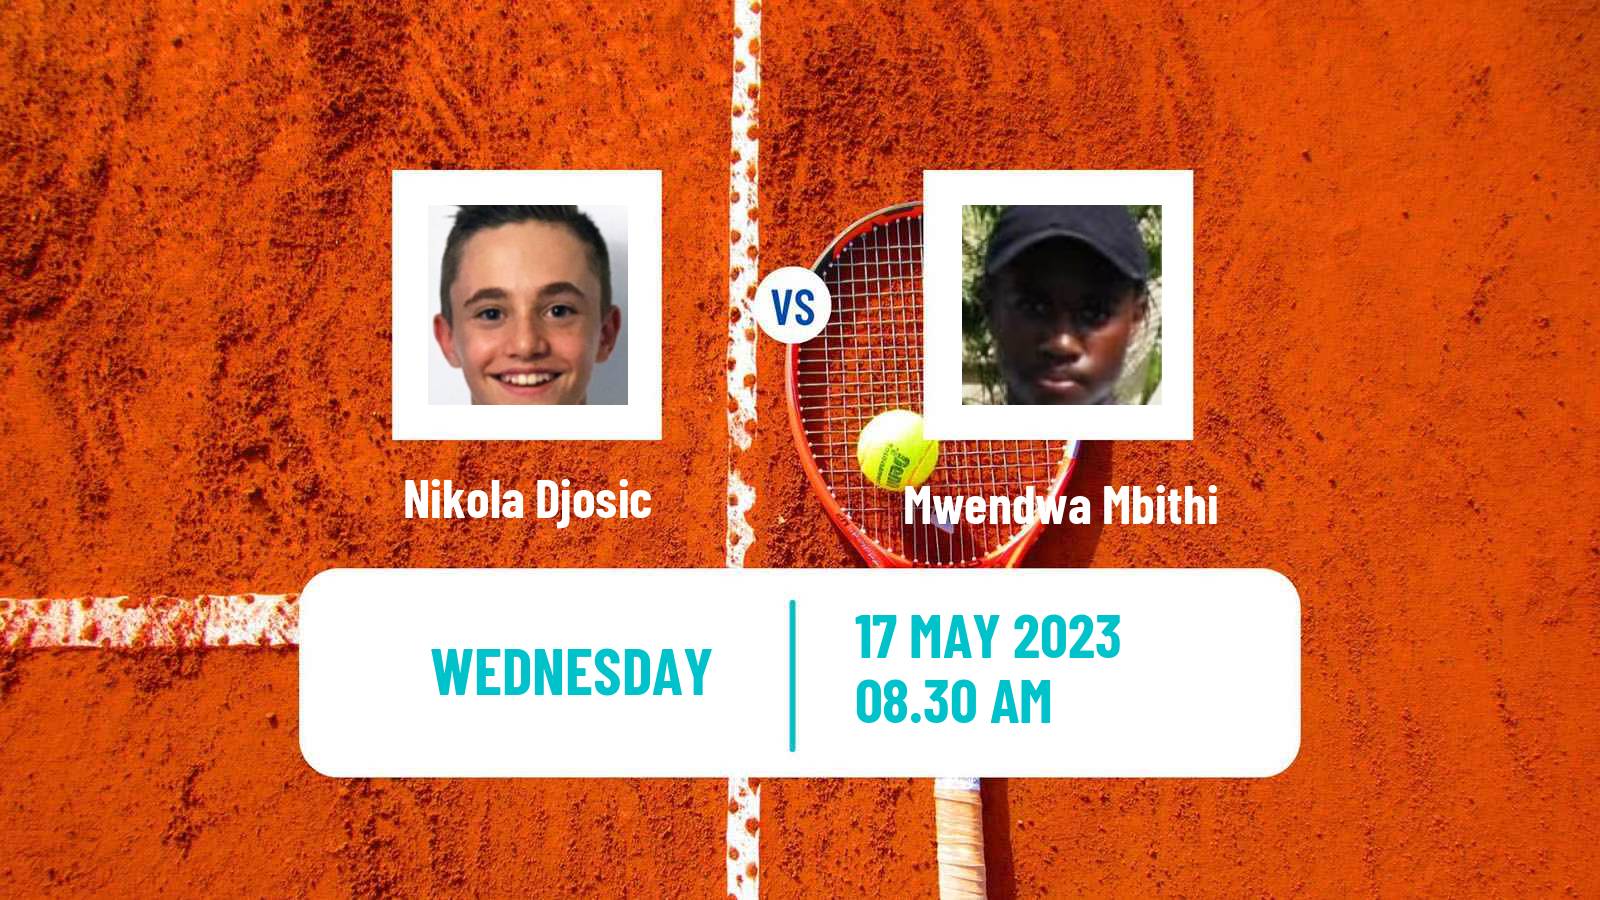 Tennis ITF M25 Kursumlijska Banja 2 Men Nikola Djosic - Mwendwa Mbithi